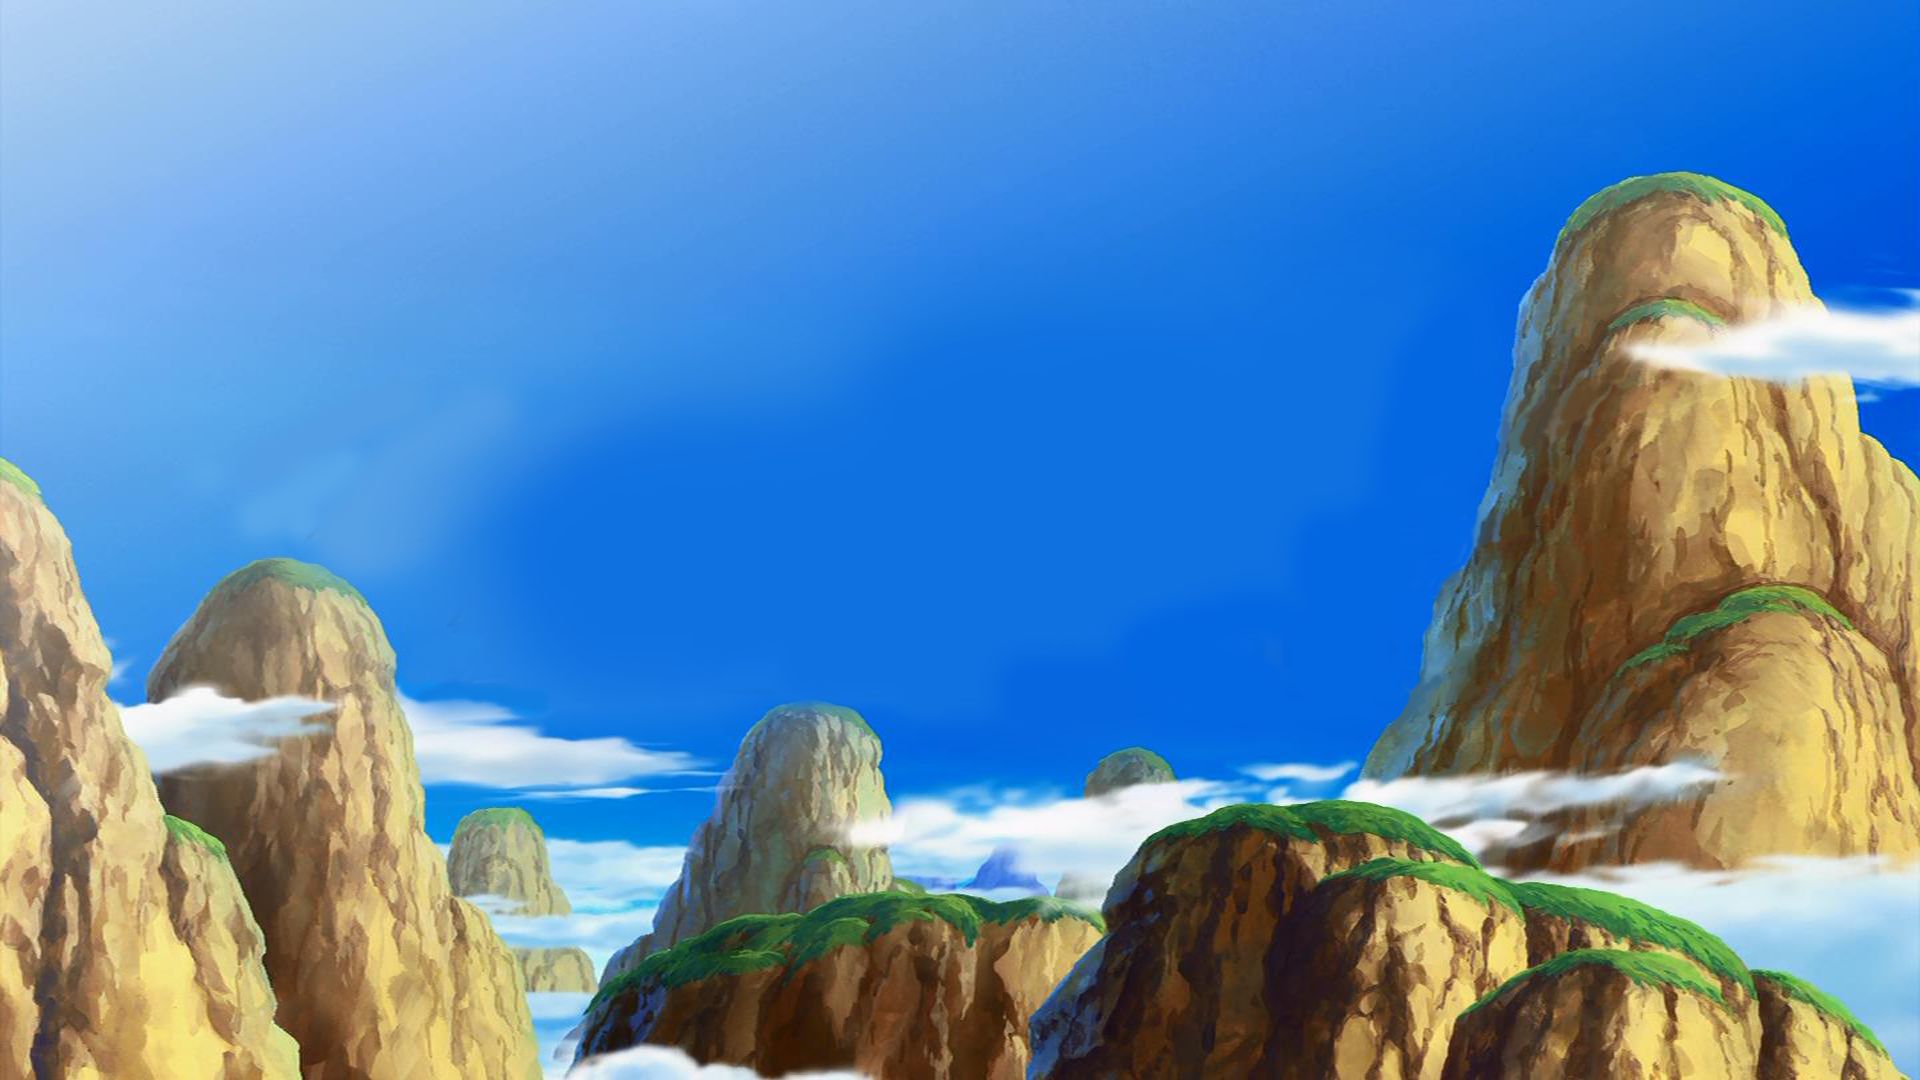 Descarga gratuita de fondo de pantalla para móvil de Dragon Ball Z, Animado, Dragon Ball.